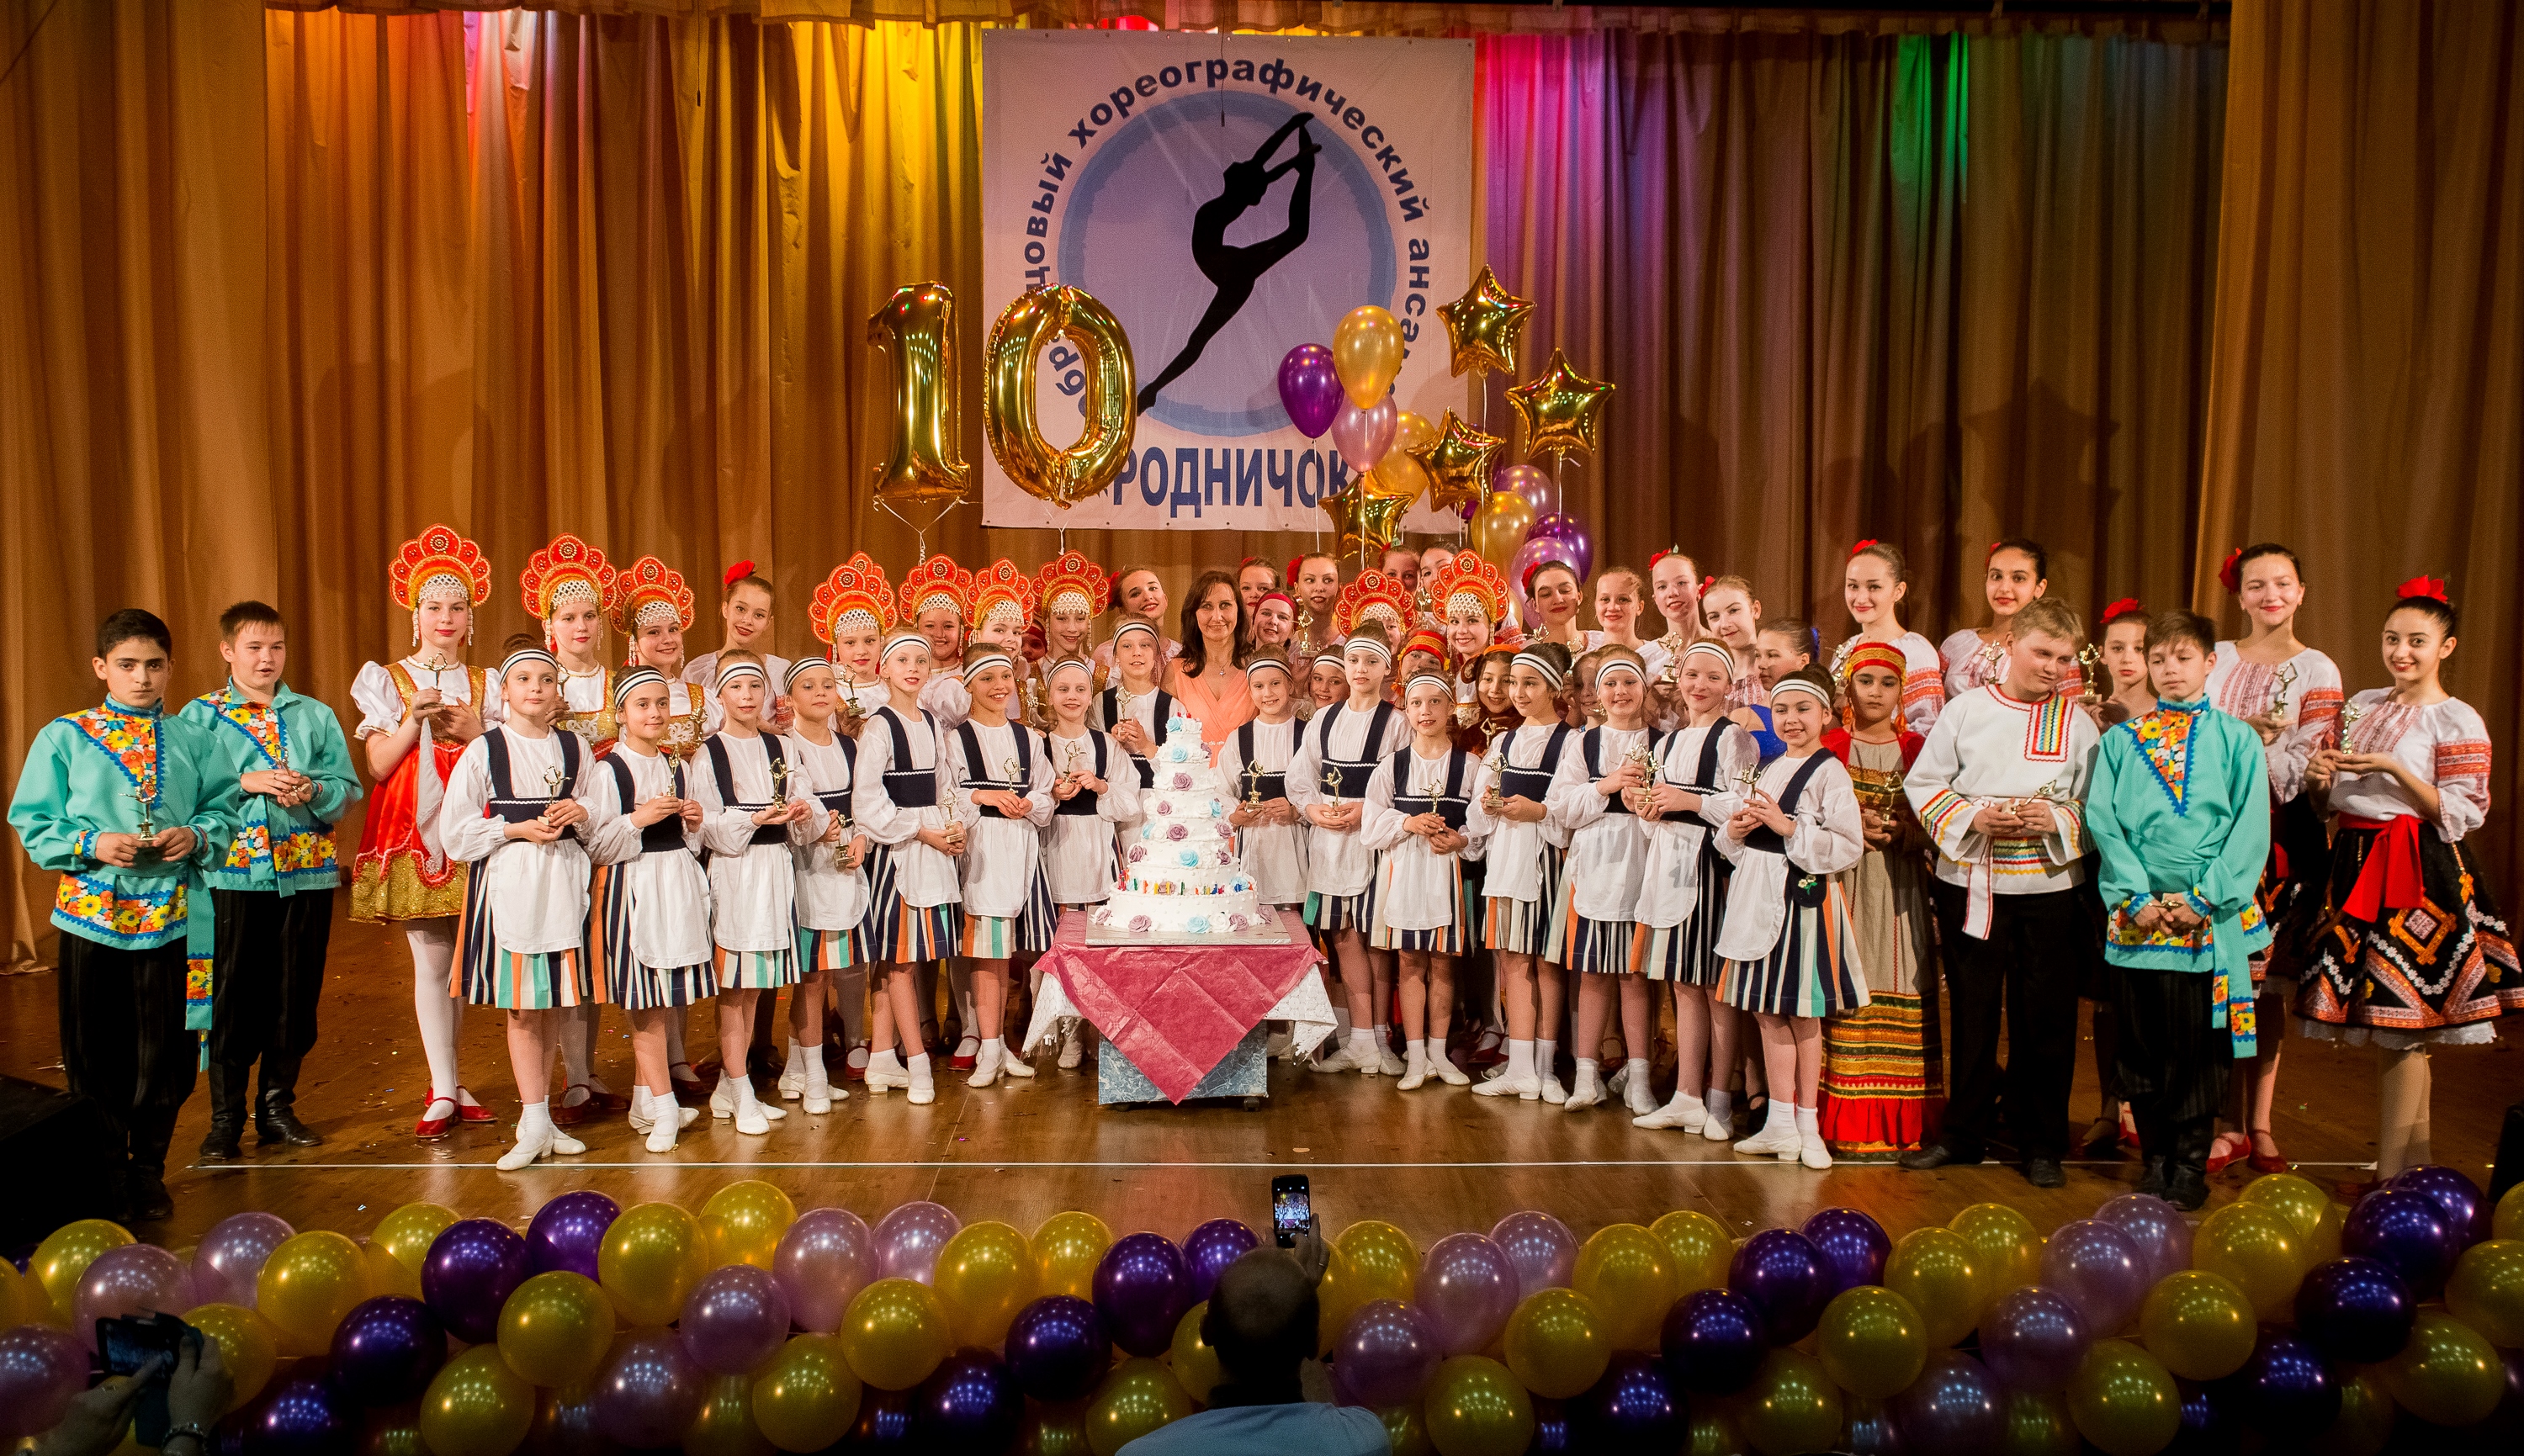 Образцовый хореографический ансамбль  «Родничок» отпраздновал 10-летний юбилей